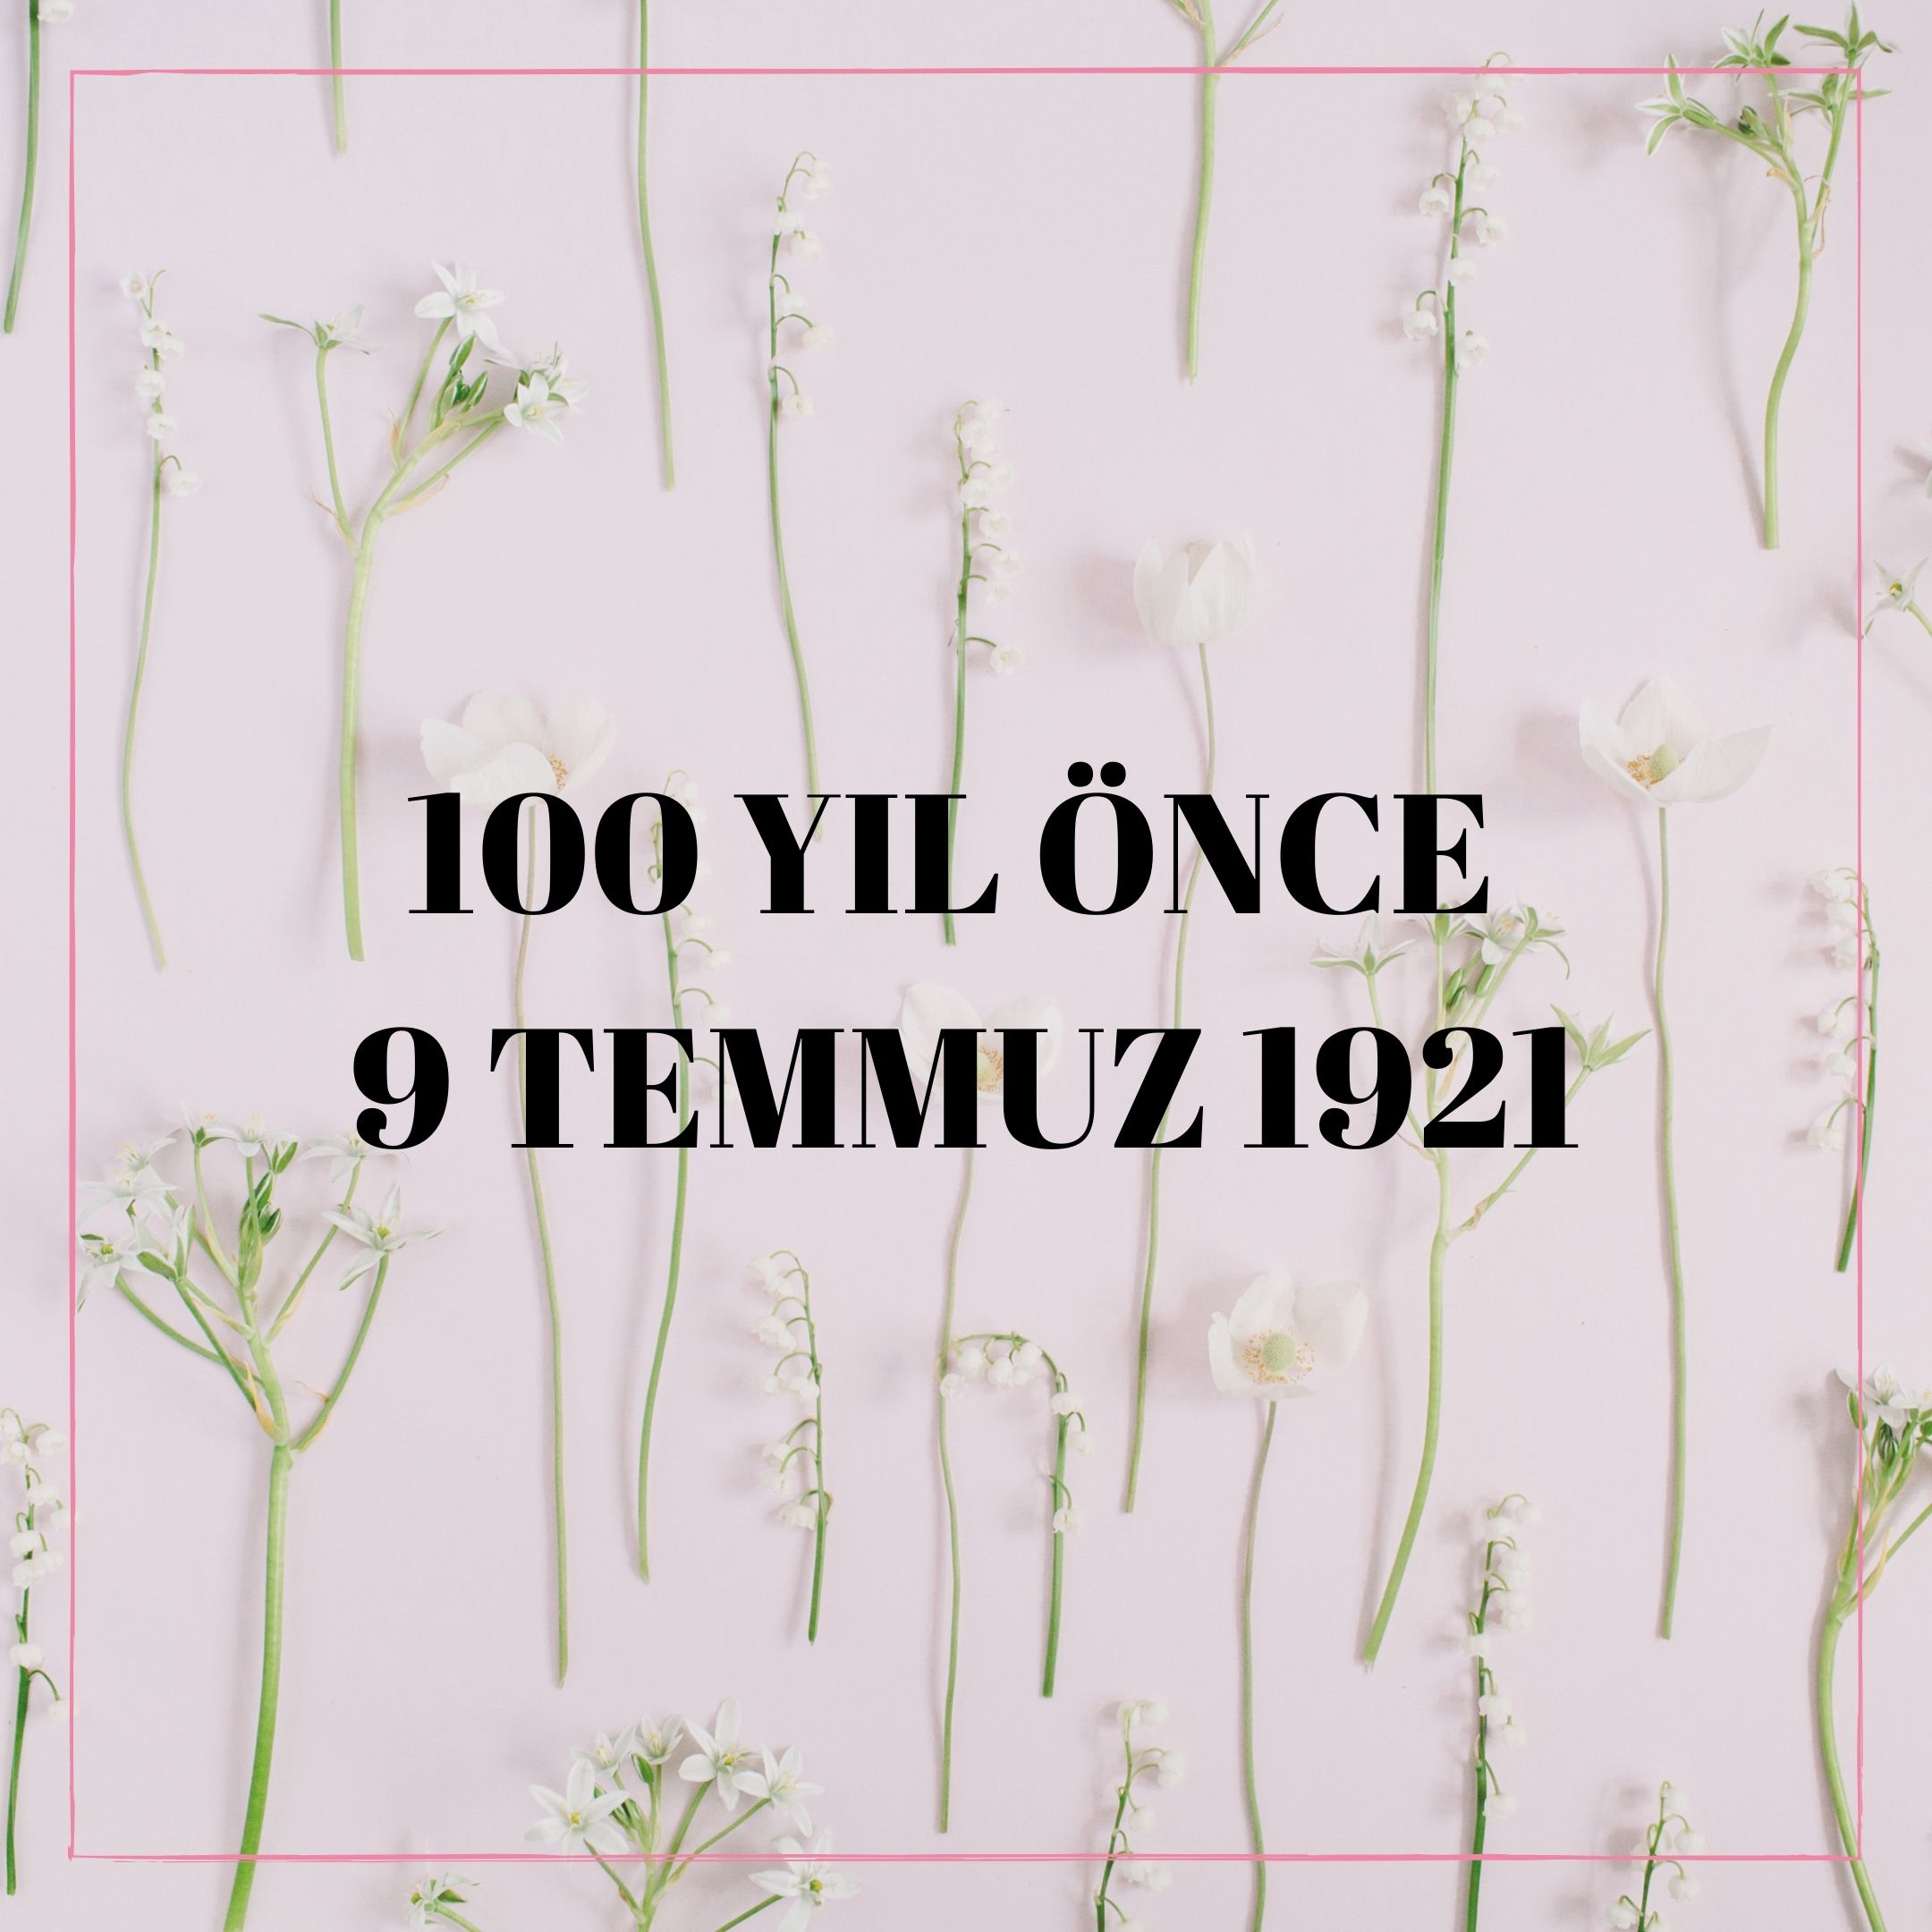 100 YIL ÖNCE 9 TEMMUZ 1921